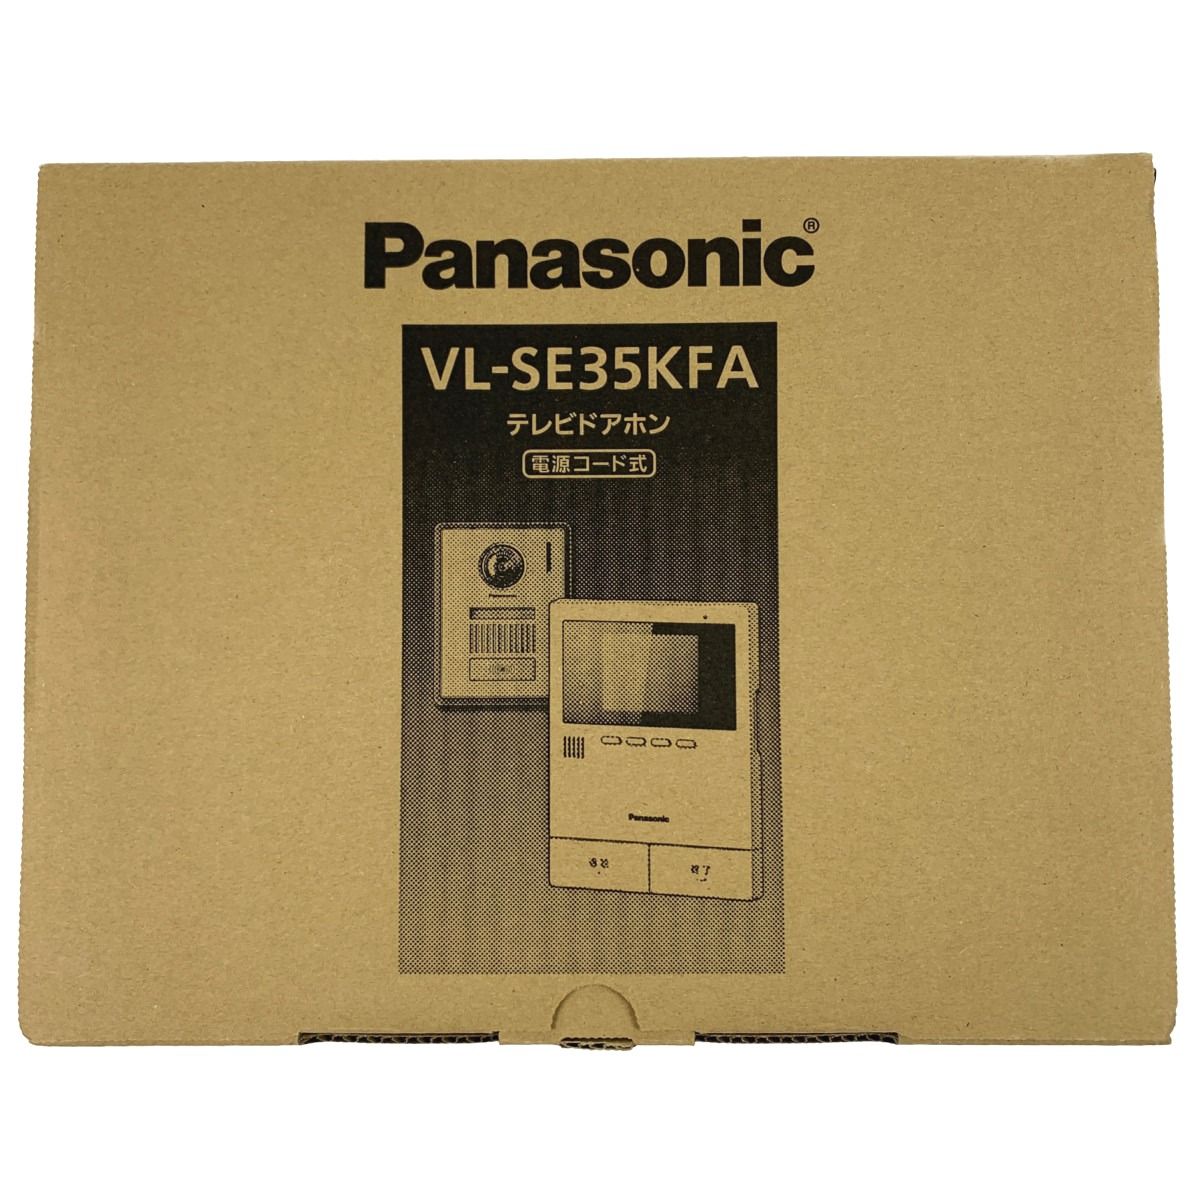 ▽▽Panasonic パナソニック テレビドアホン 電源コード式 VL-SE35KFA 開封未使用品 なんでもリサイクルビッグバンSHOP  メルカリ